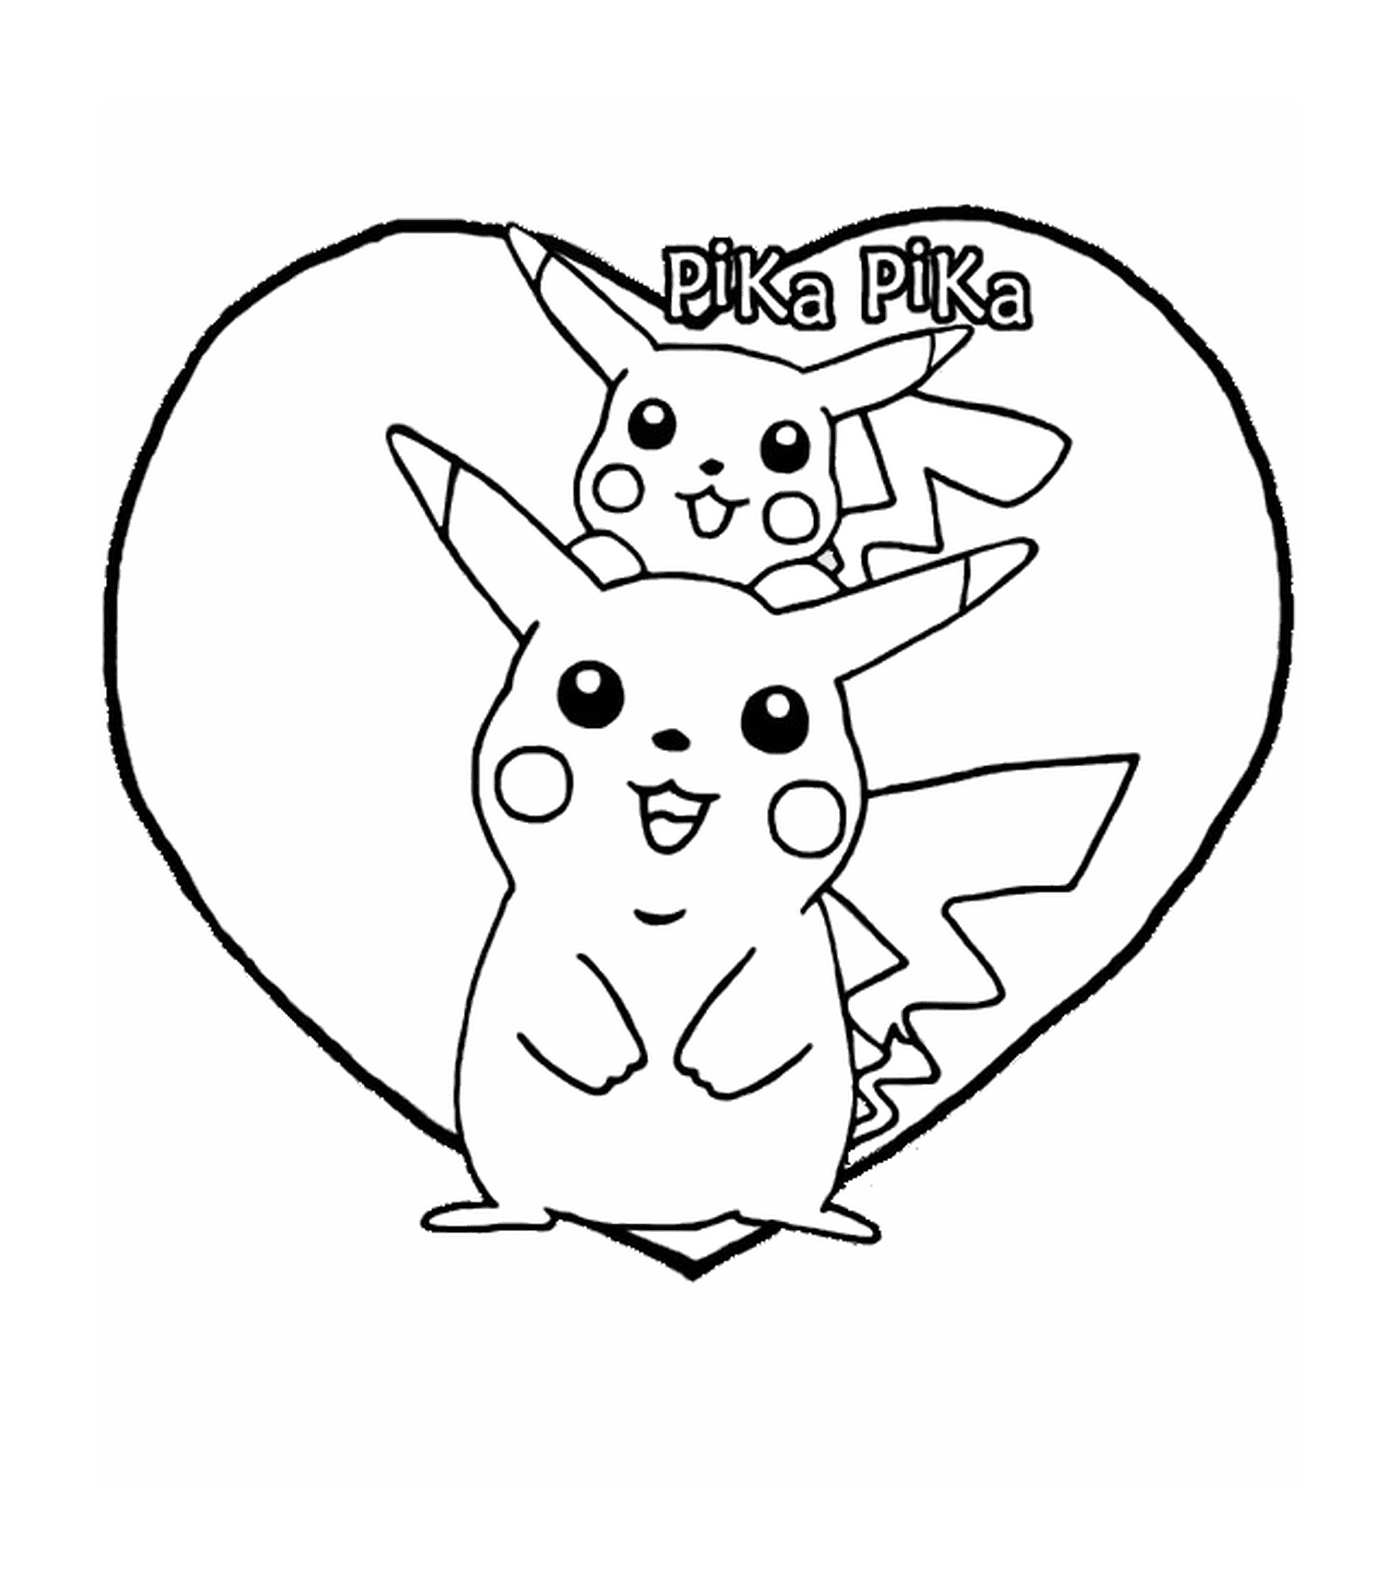   Pikachu et Pika dans un cœur 